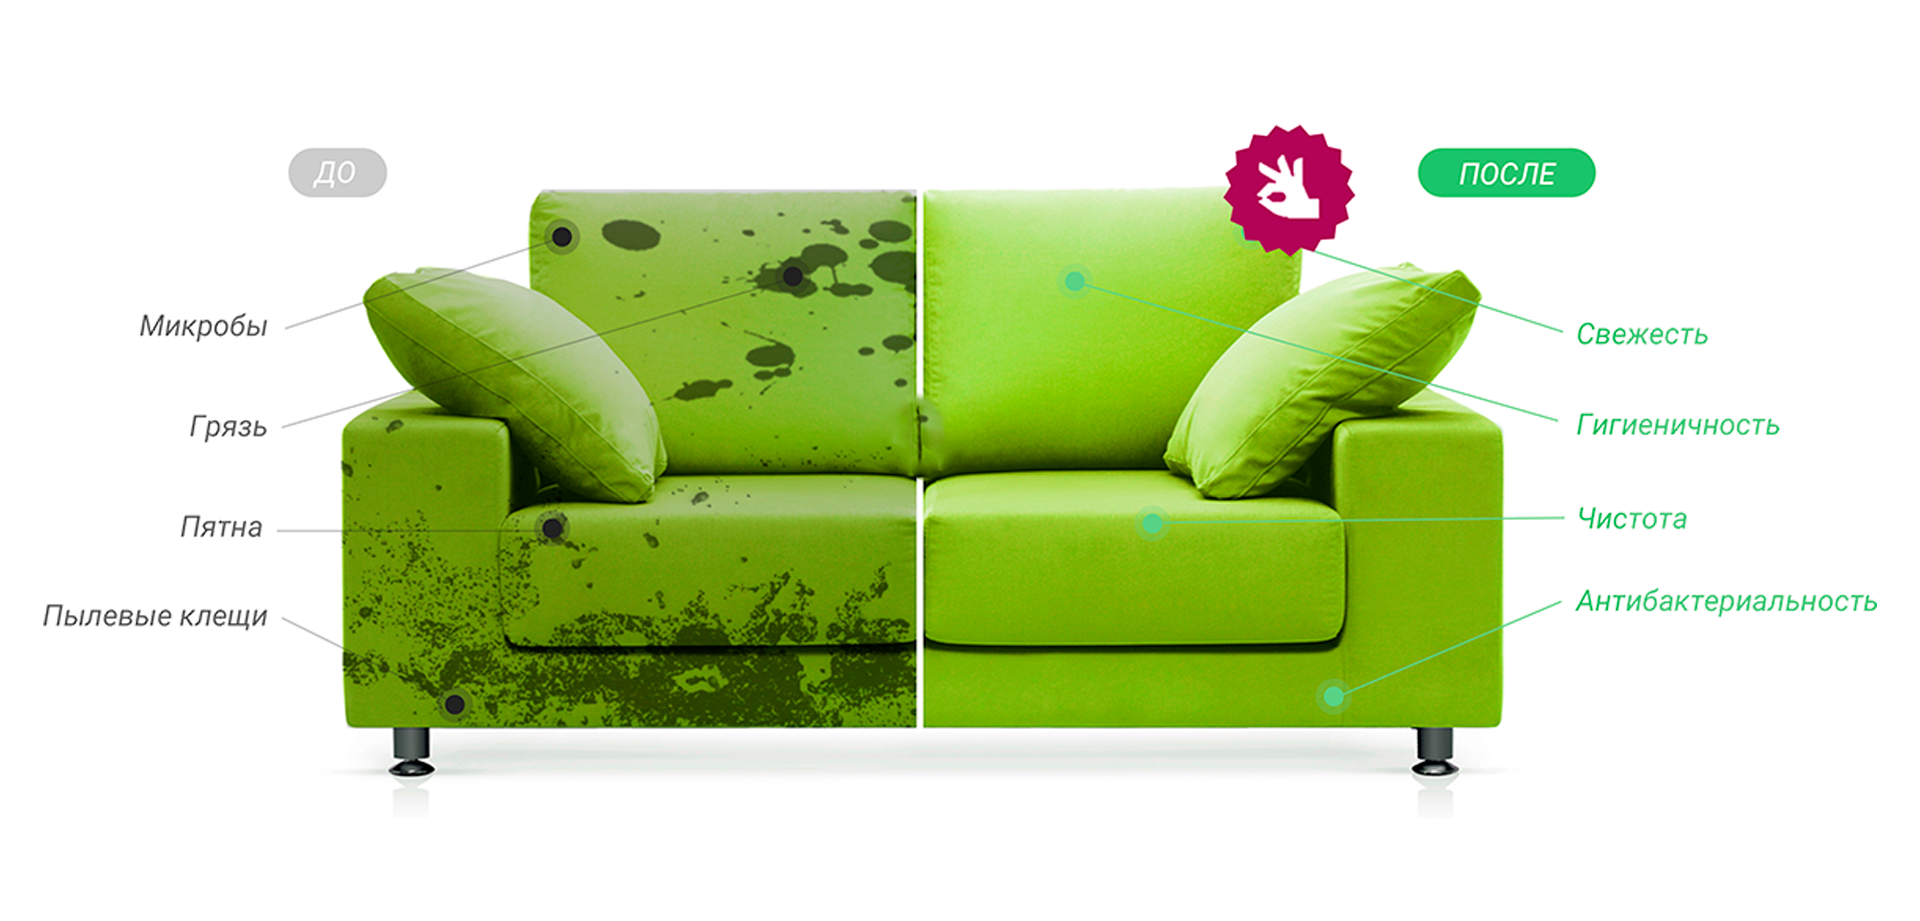 Зеленый диван: виды, дизайн, выбор материала обивки, механизма, сочетания, оттенки